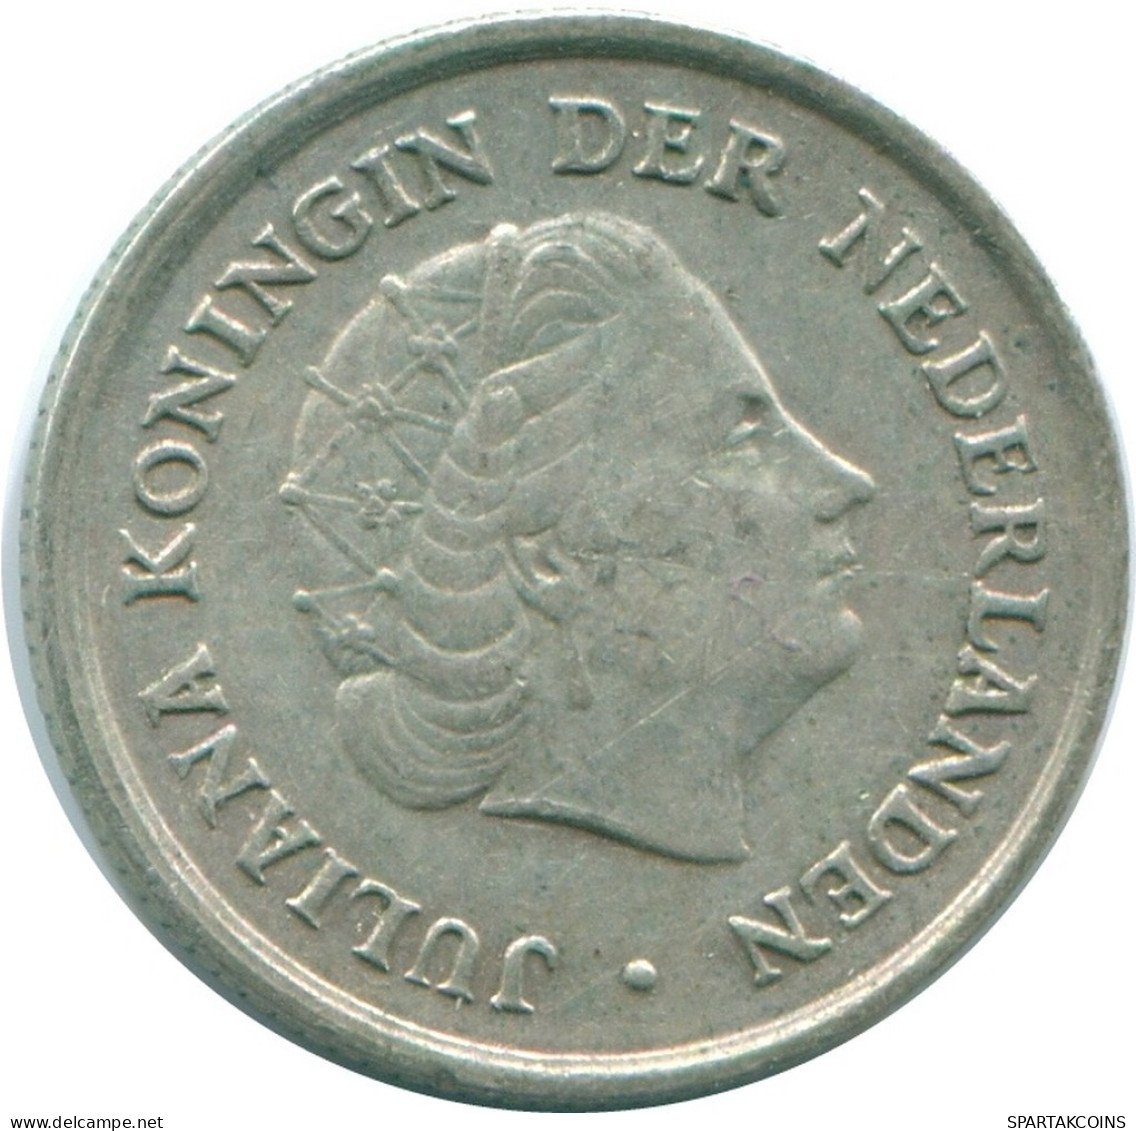 1/10 GULDEN 1966 NIEDERLÄNDISCHE ANTILLEN SILBER Koloniale Münze #NL12664.3.D.A - Niederländische Antillen